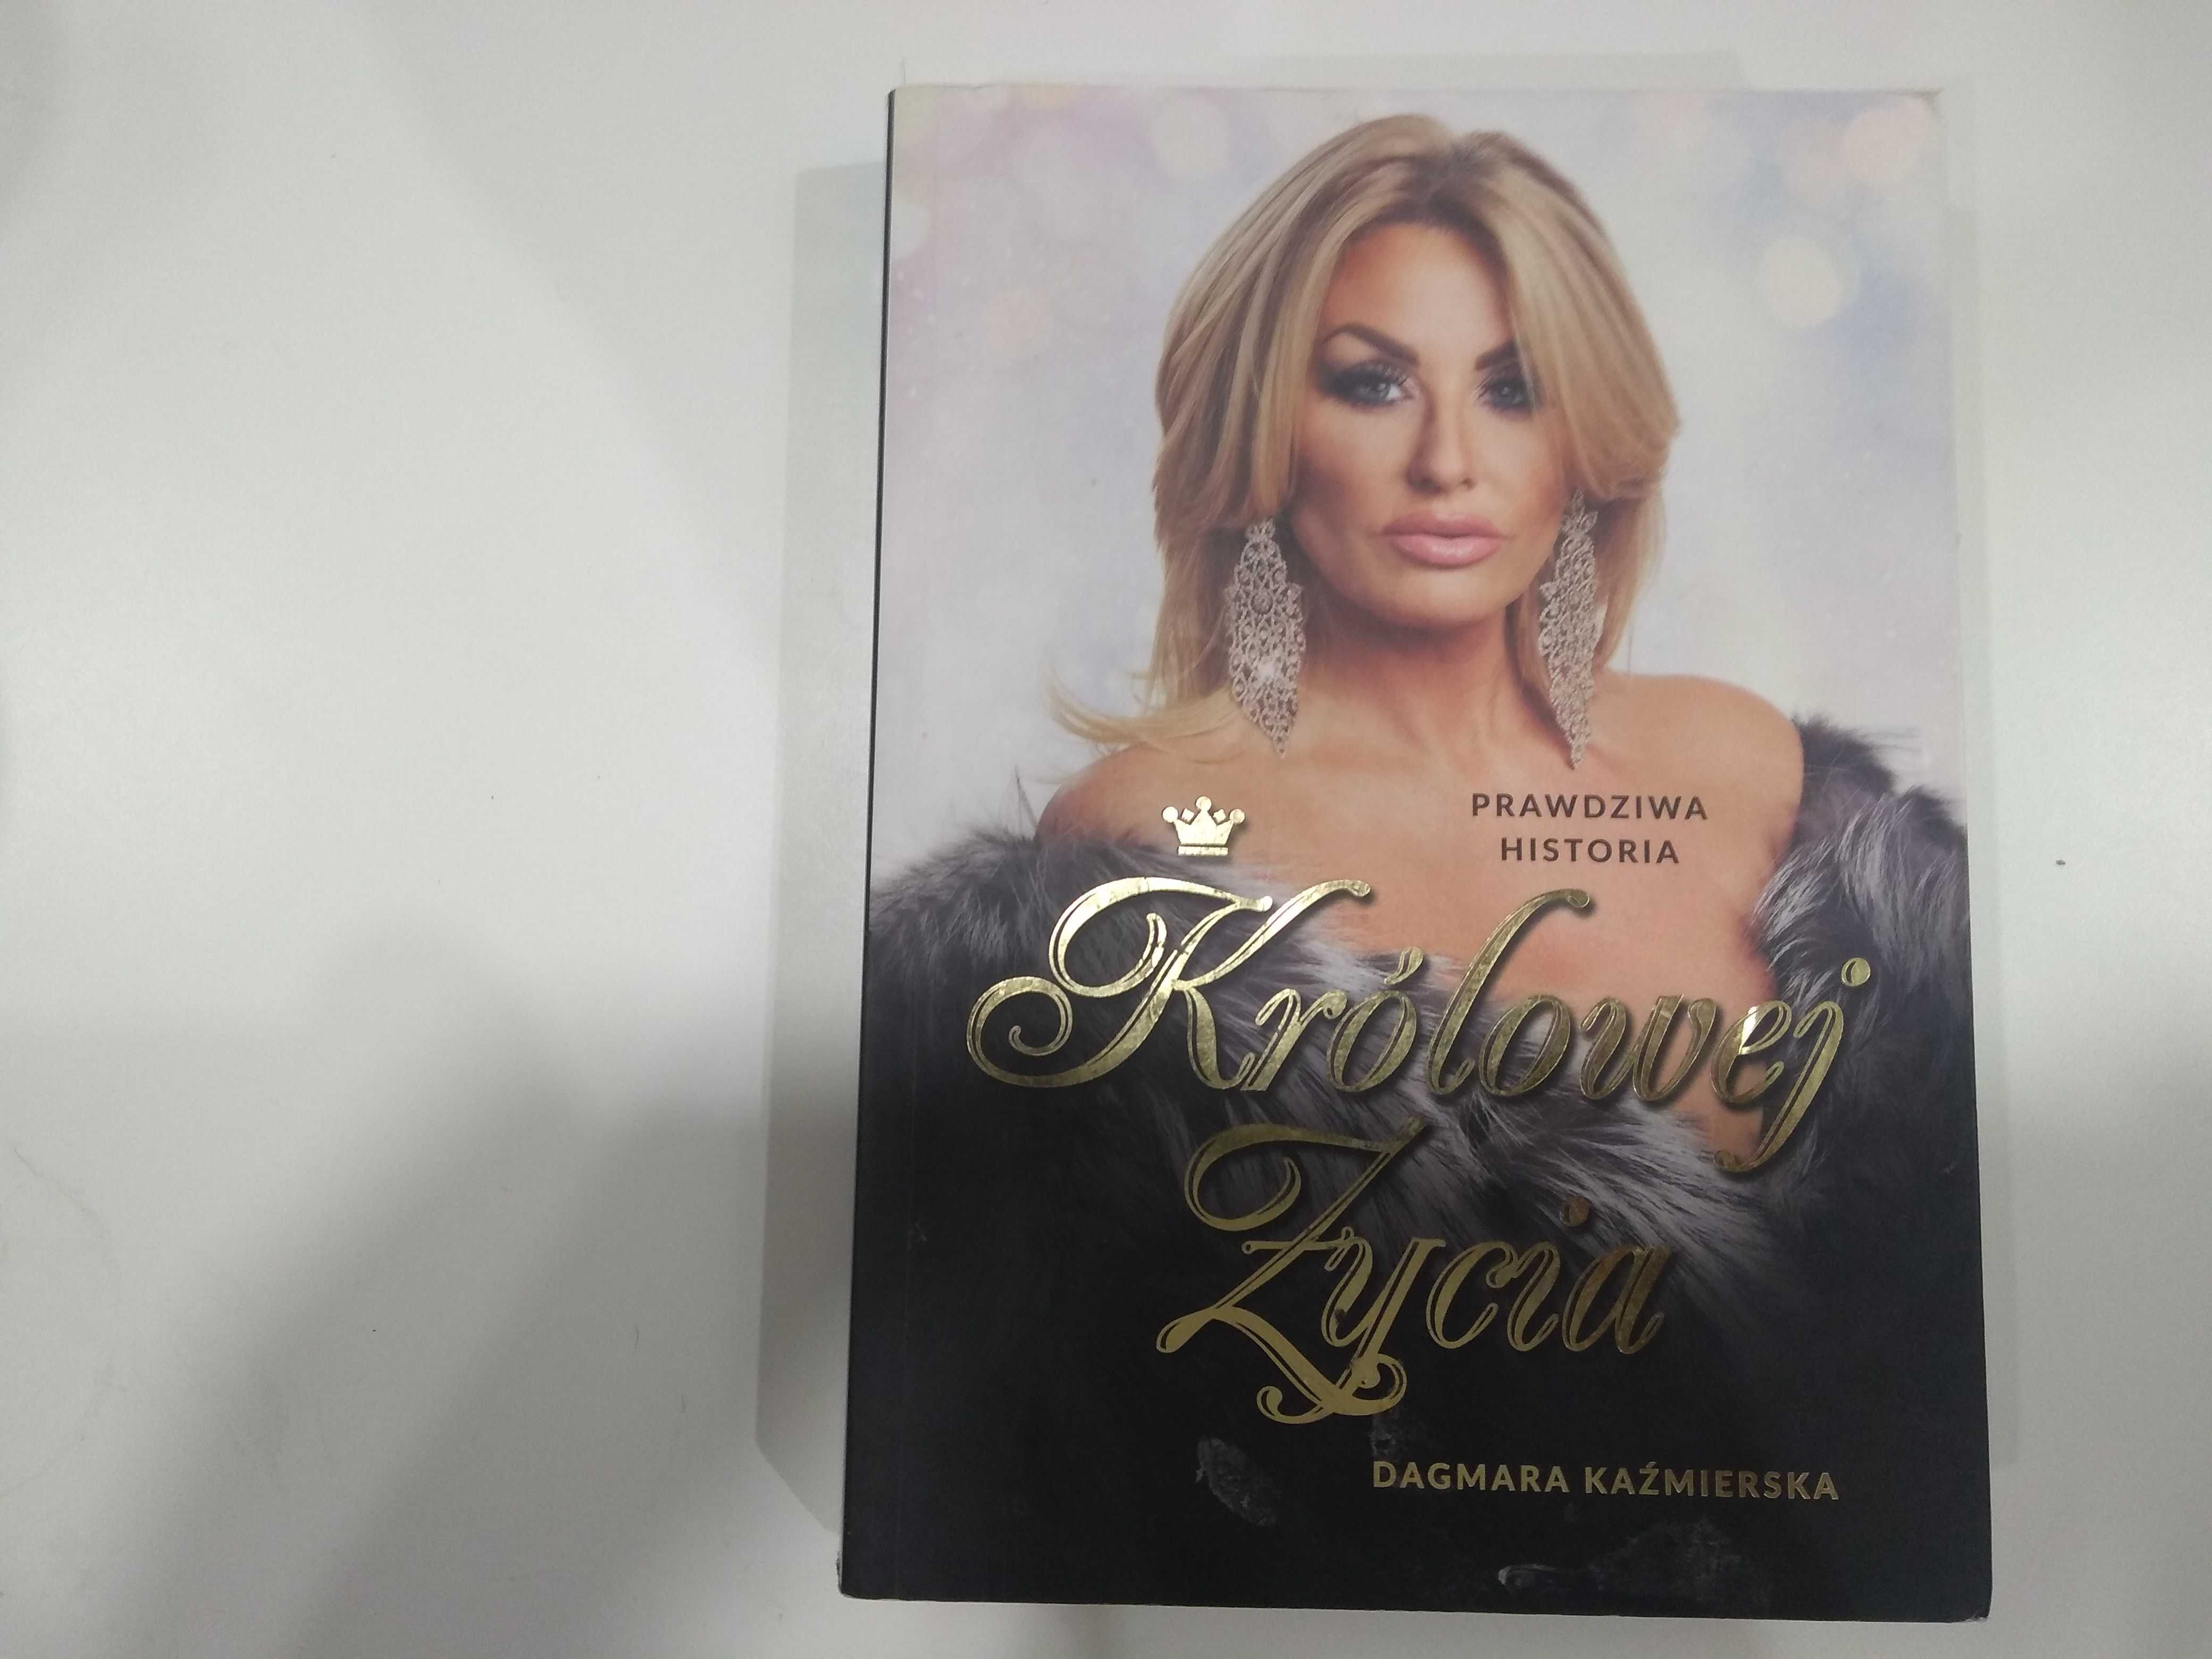 Dobra książka - Prawdziwa historia królowej życia D. Kaźmierska (PF)